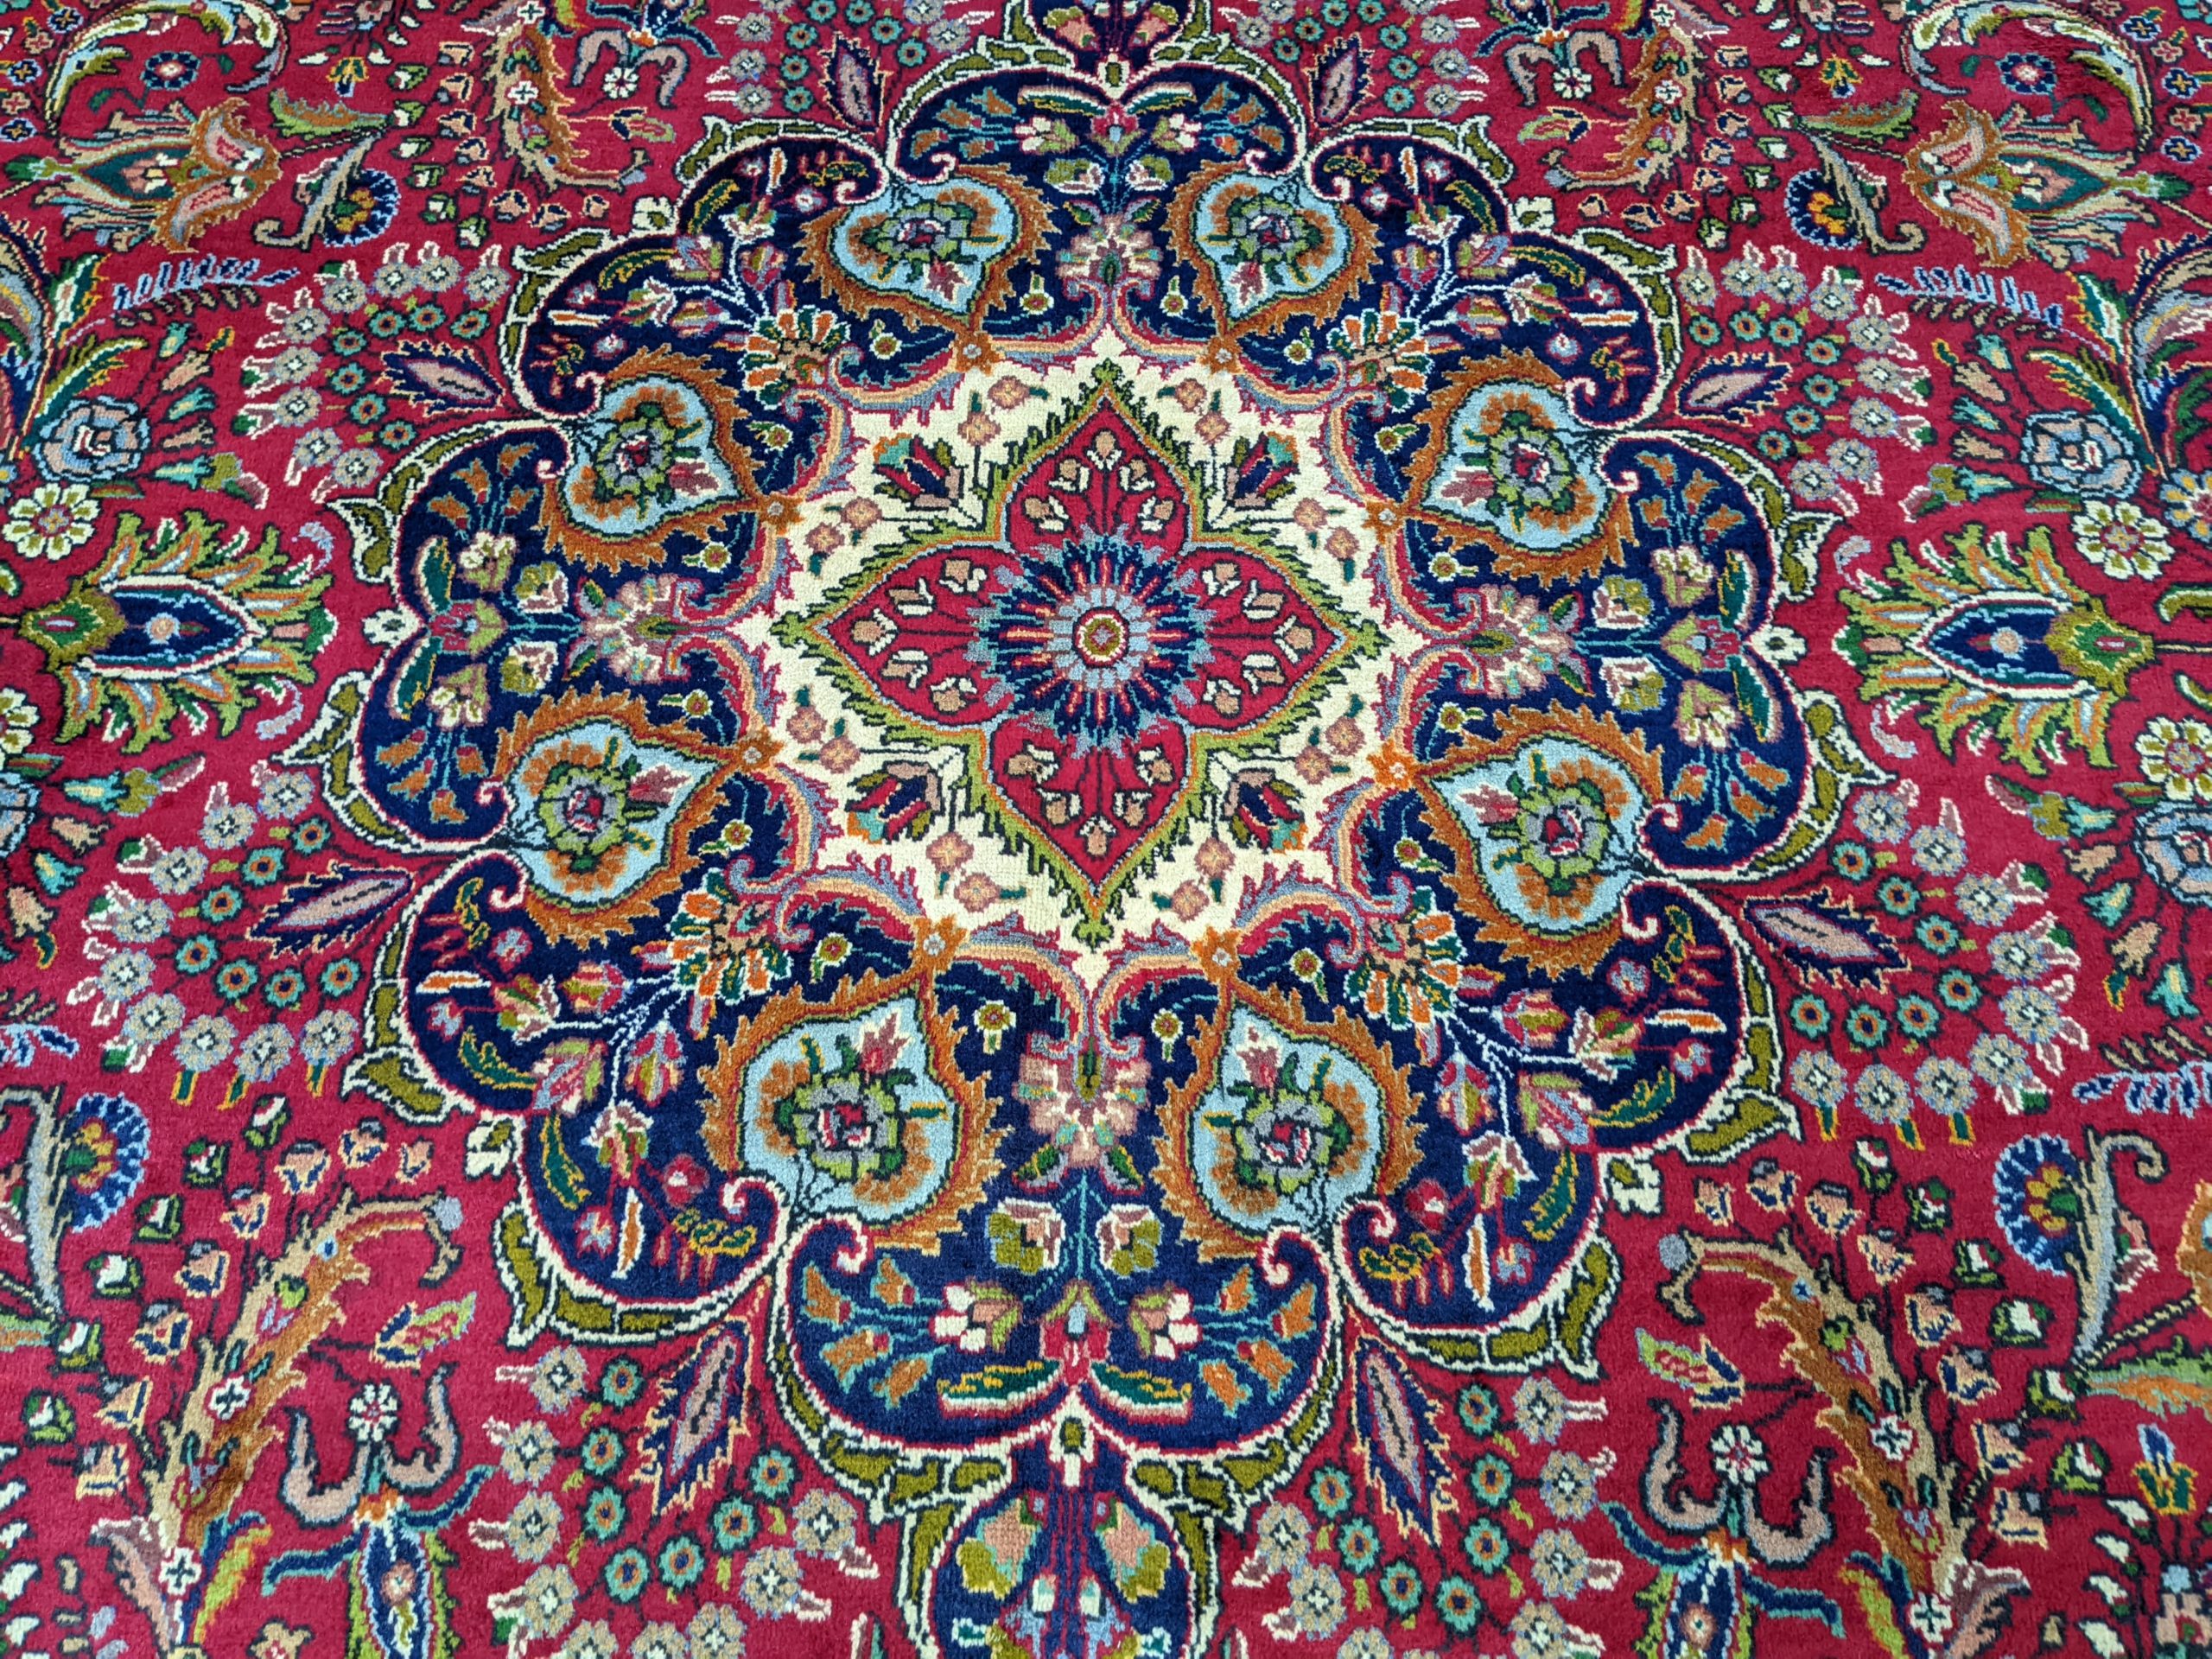 10x13 Tabriz Persian Rug